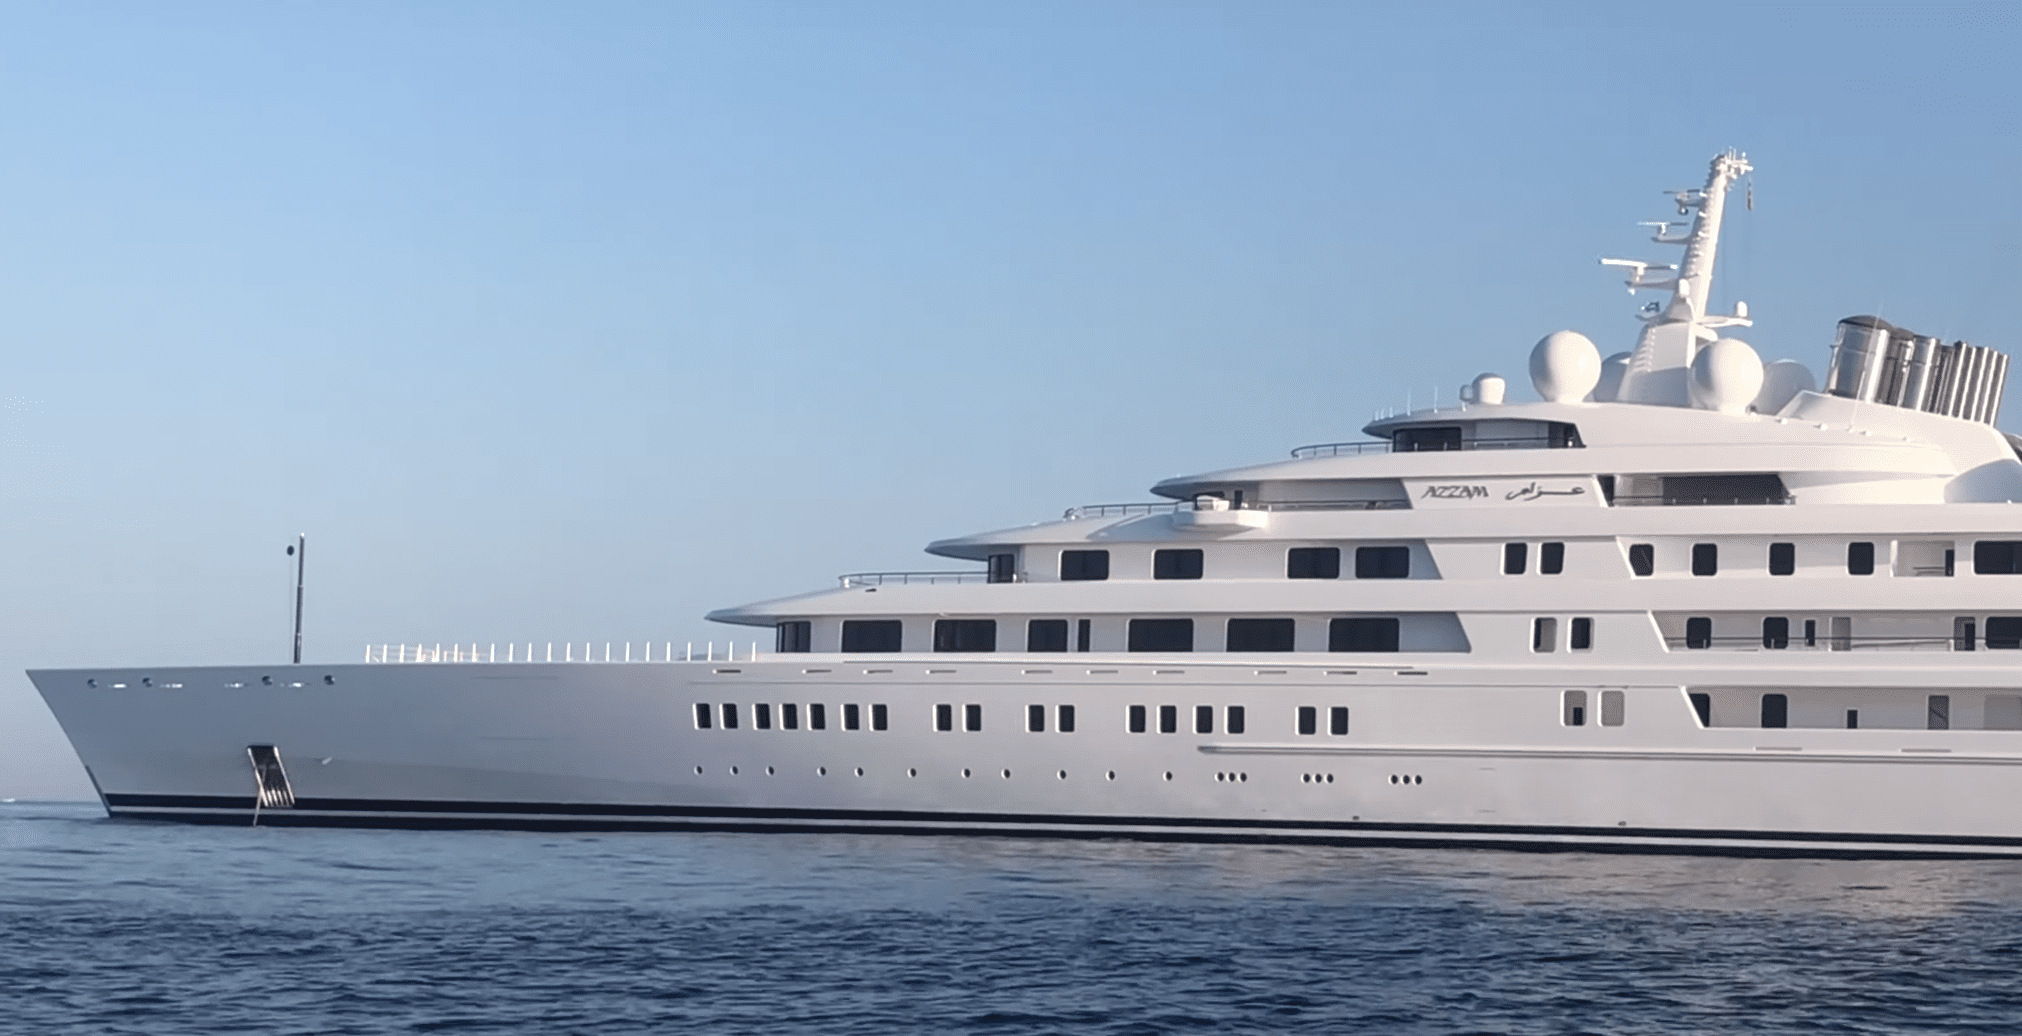 180m yacht